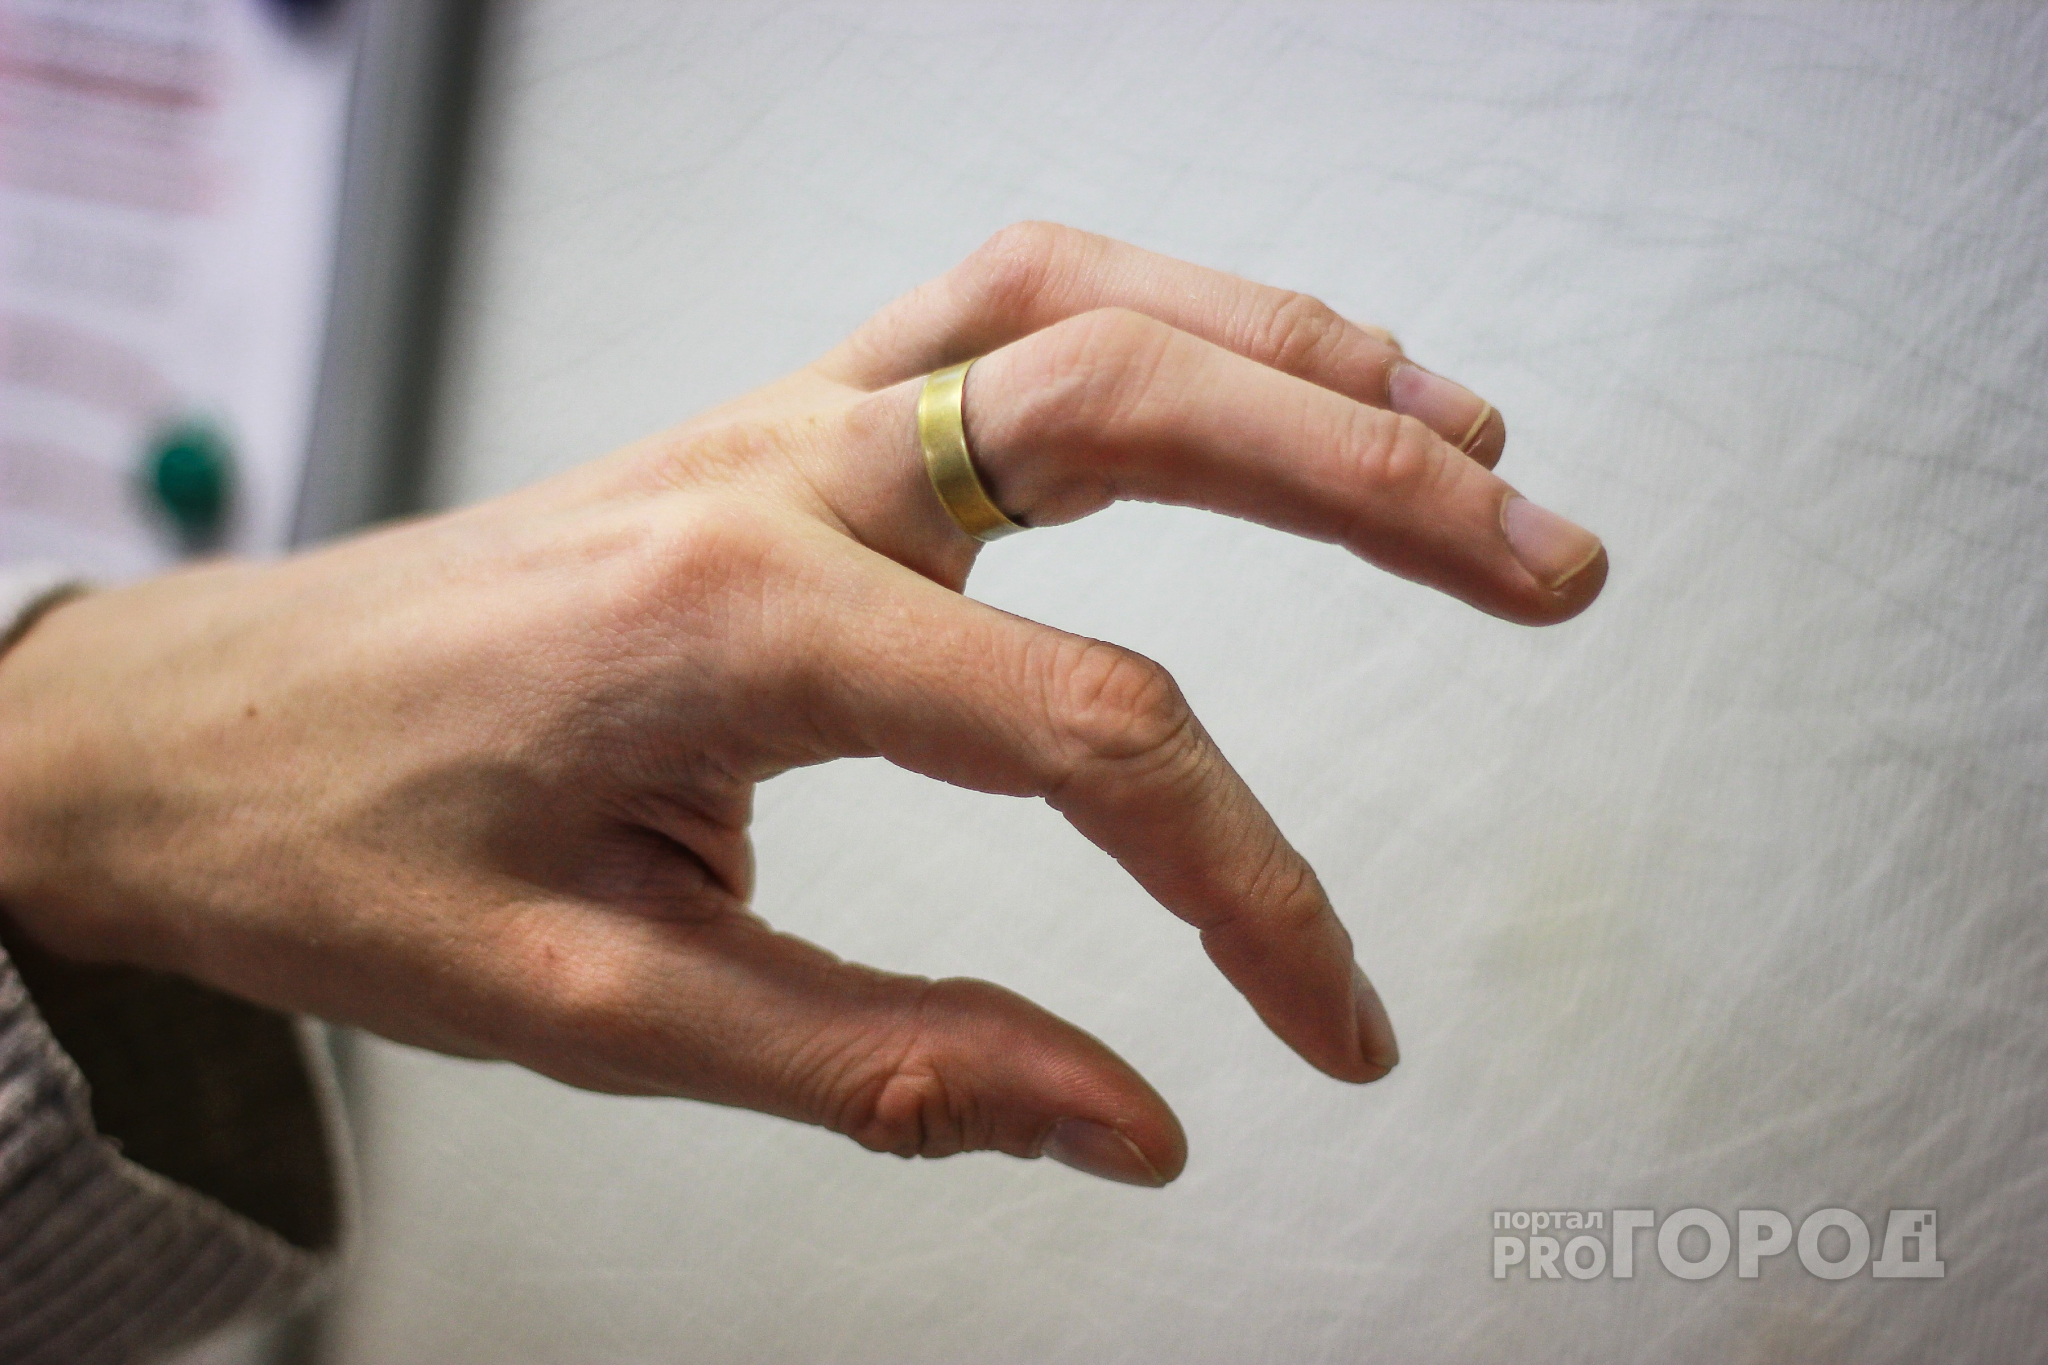 Несчастный случай на работе: жителю Марий Эл отрезало пальцы